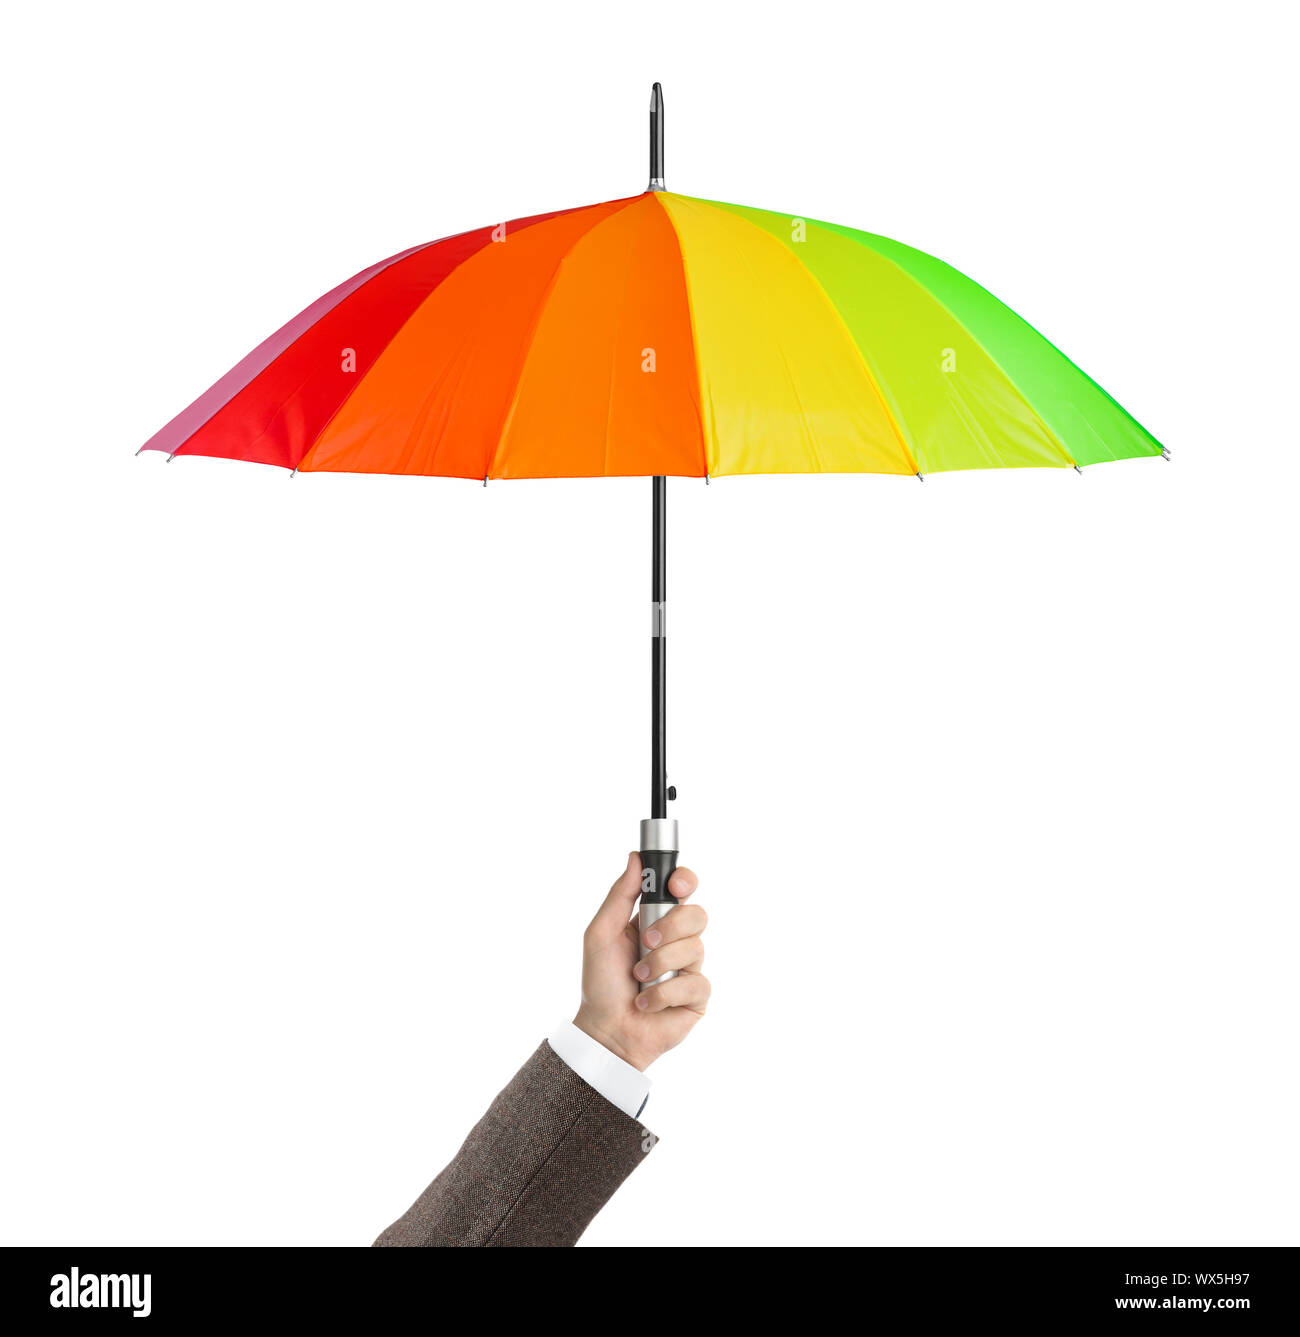 Hand with umbrella Stock Photo